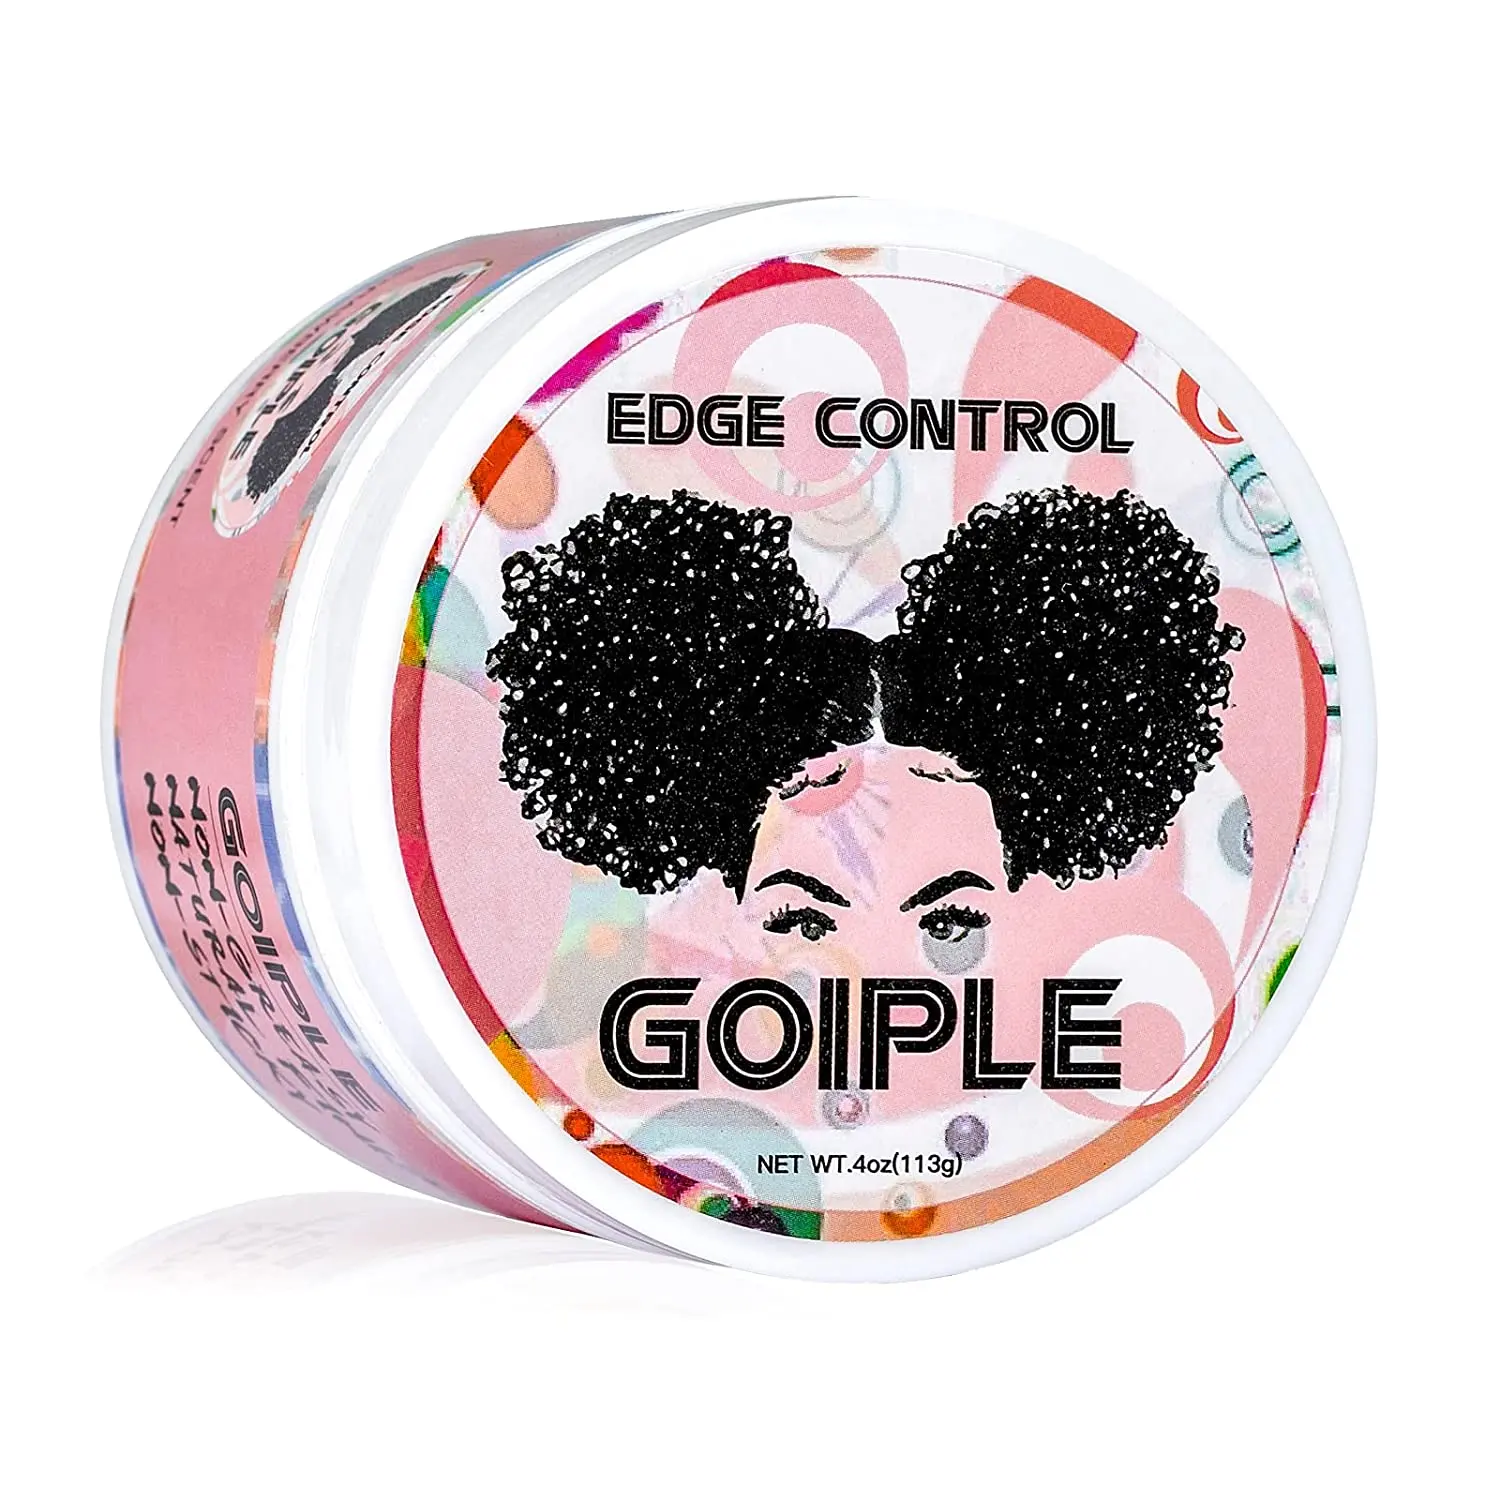 Großhandel Fly Away Hair Tamer Wax und Pomade Stick für schwarze Frauen Private Label Curl Hair Styling Cream Edge Control Gel